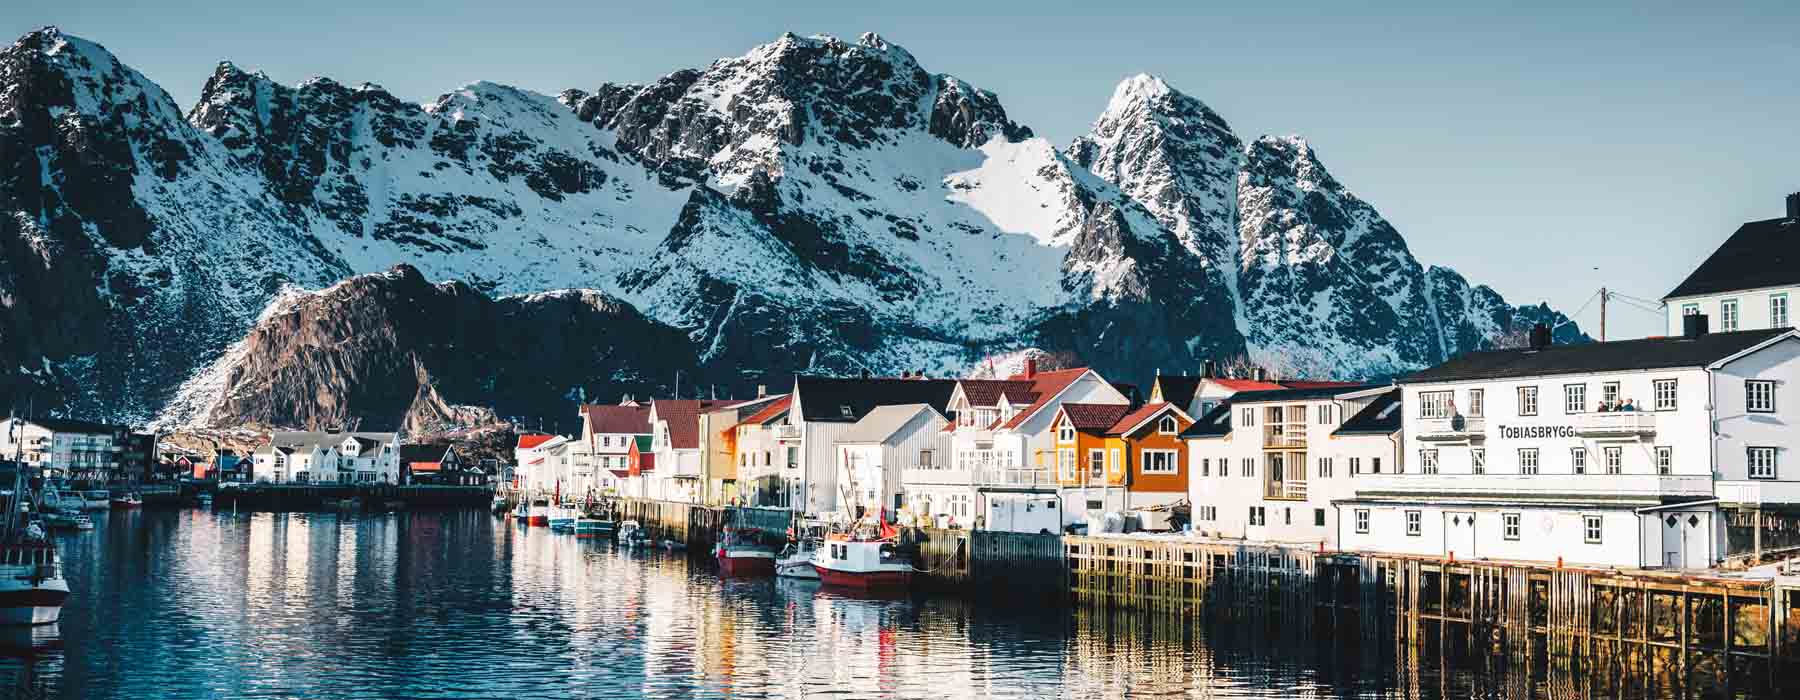 Norway<br class="hidden-md hidden-lg" /> Cultural Holidays